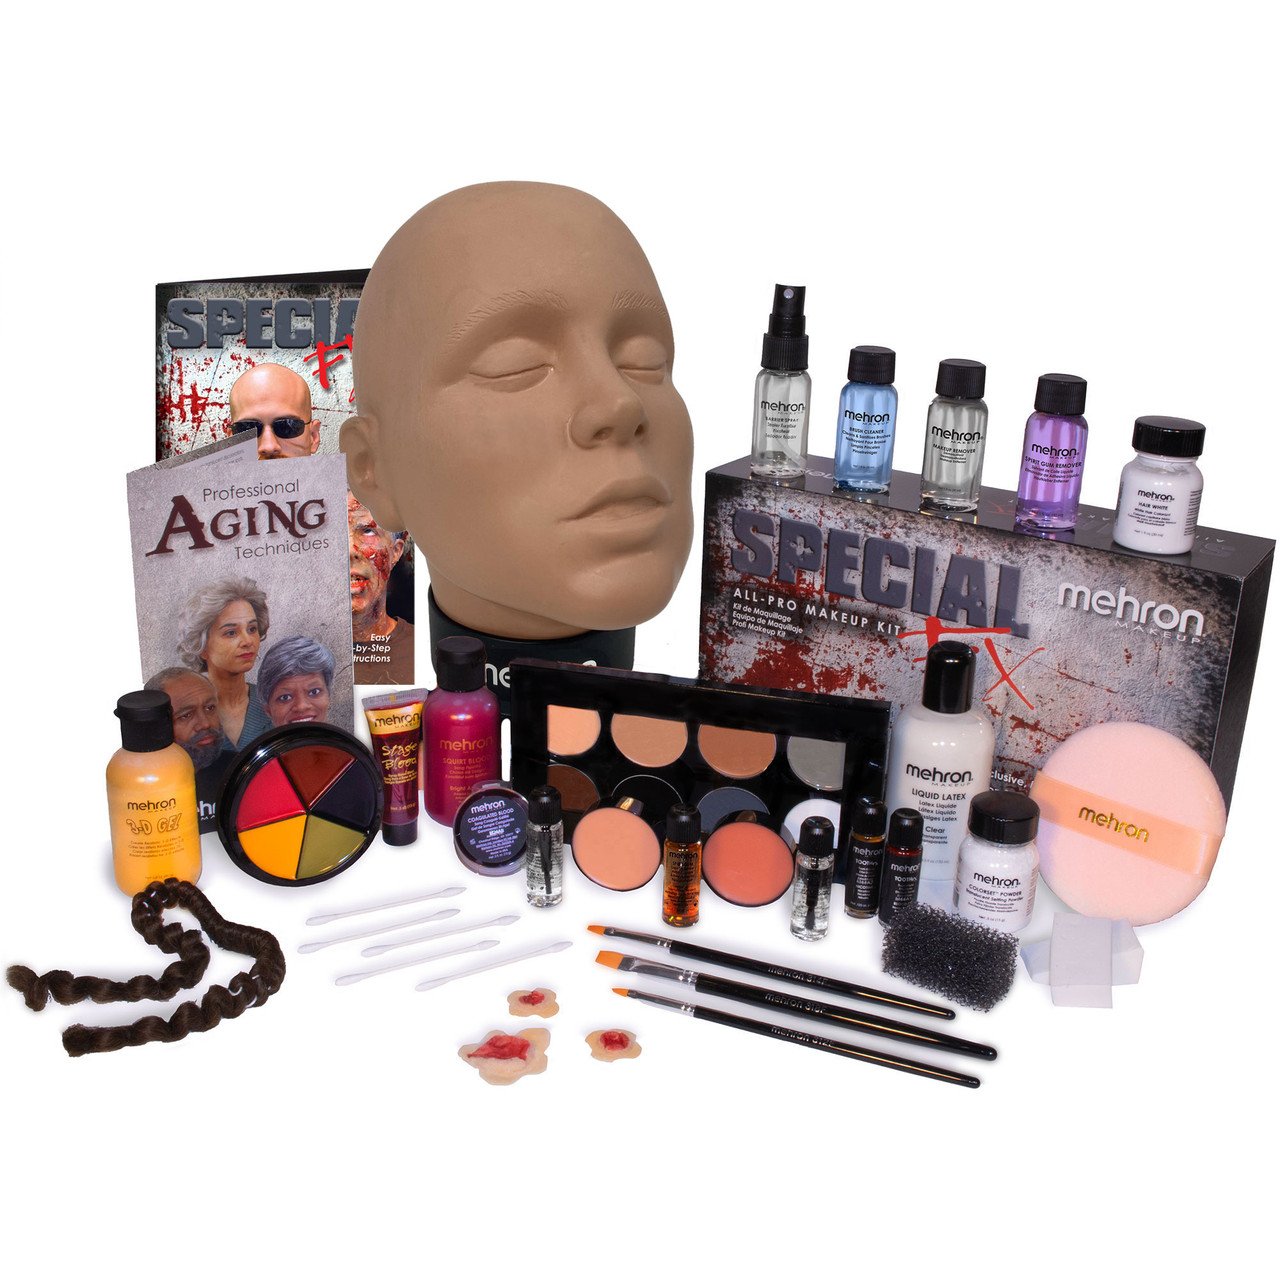 Beginner Makeup Artist Kit Must Haves Full Kit Check List 